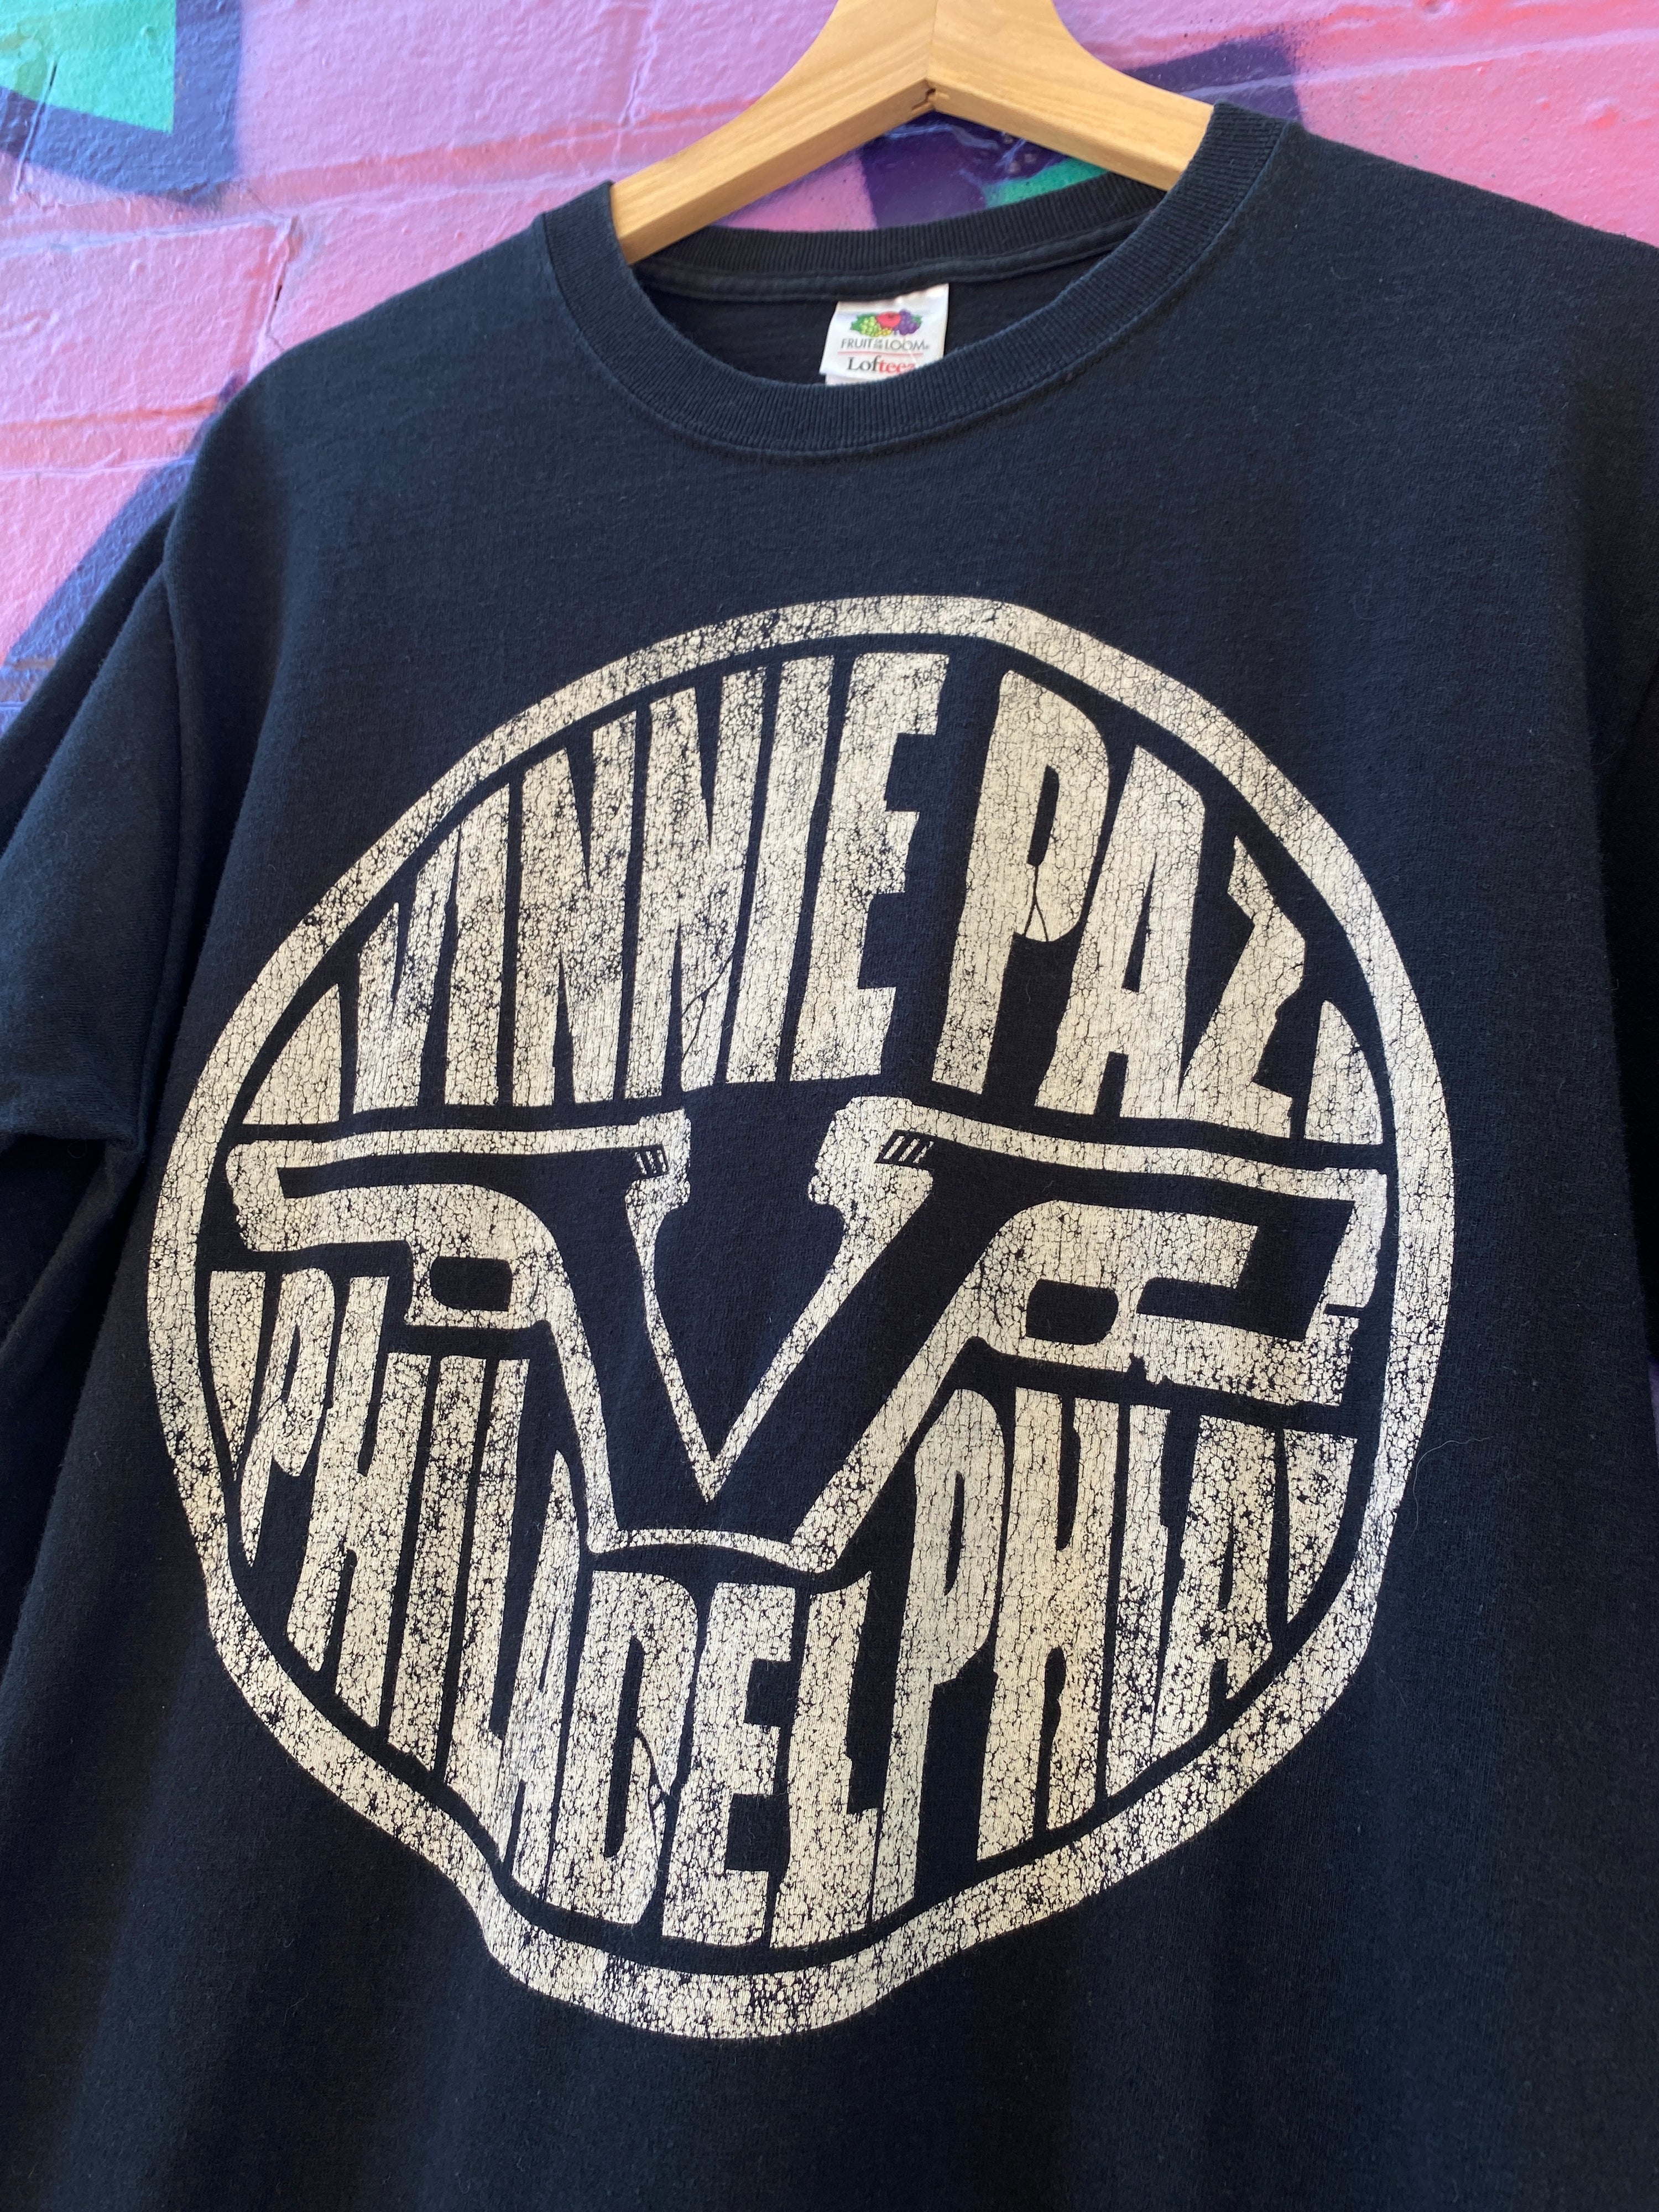 M - Vinnie Paz Philadelphia